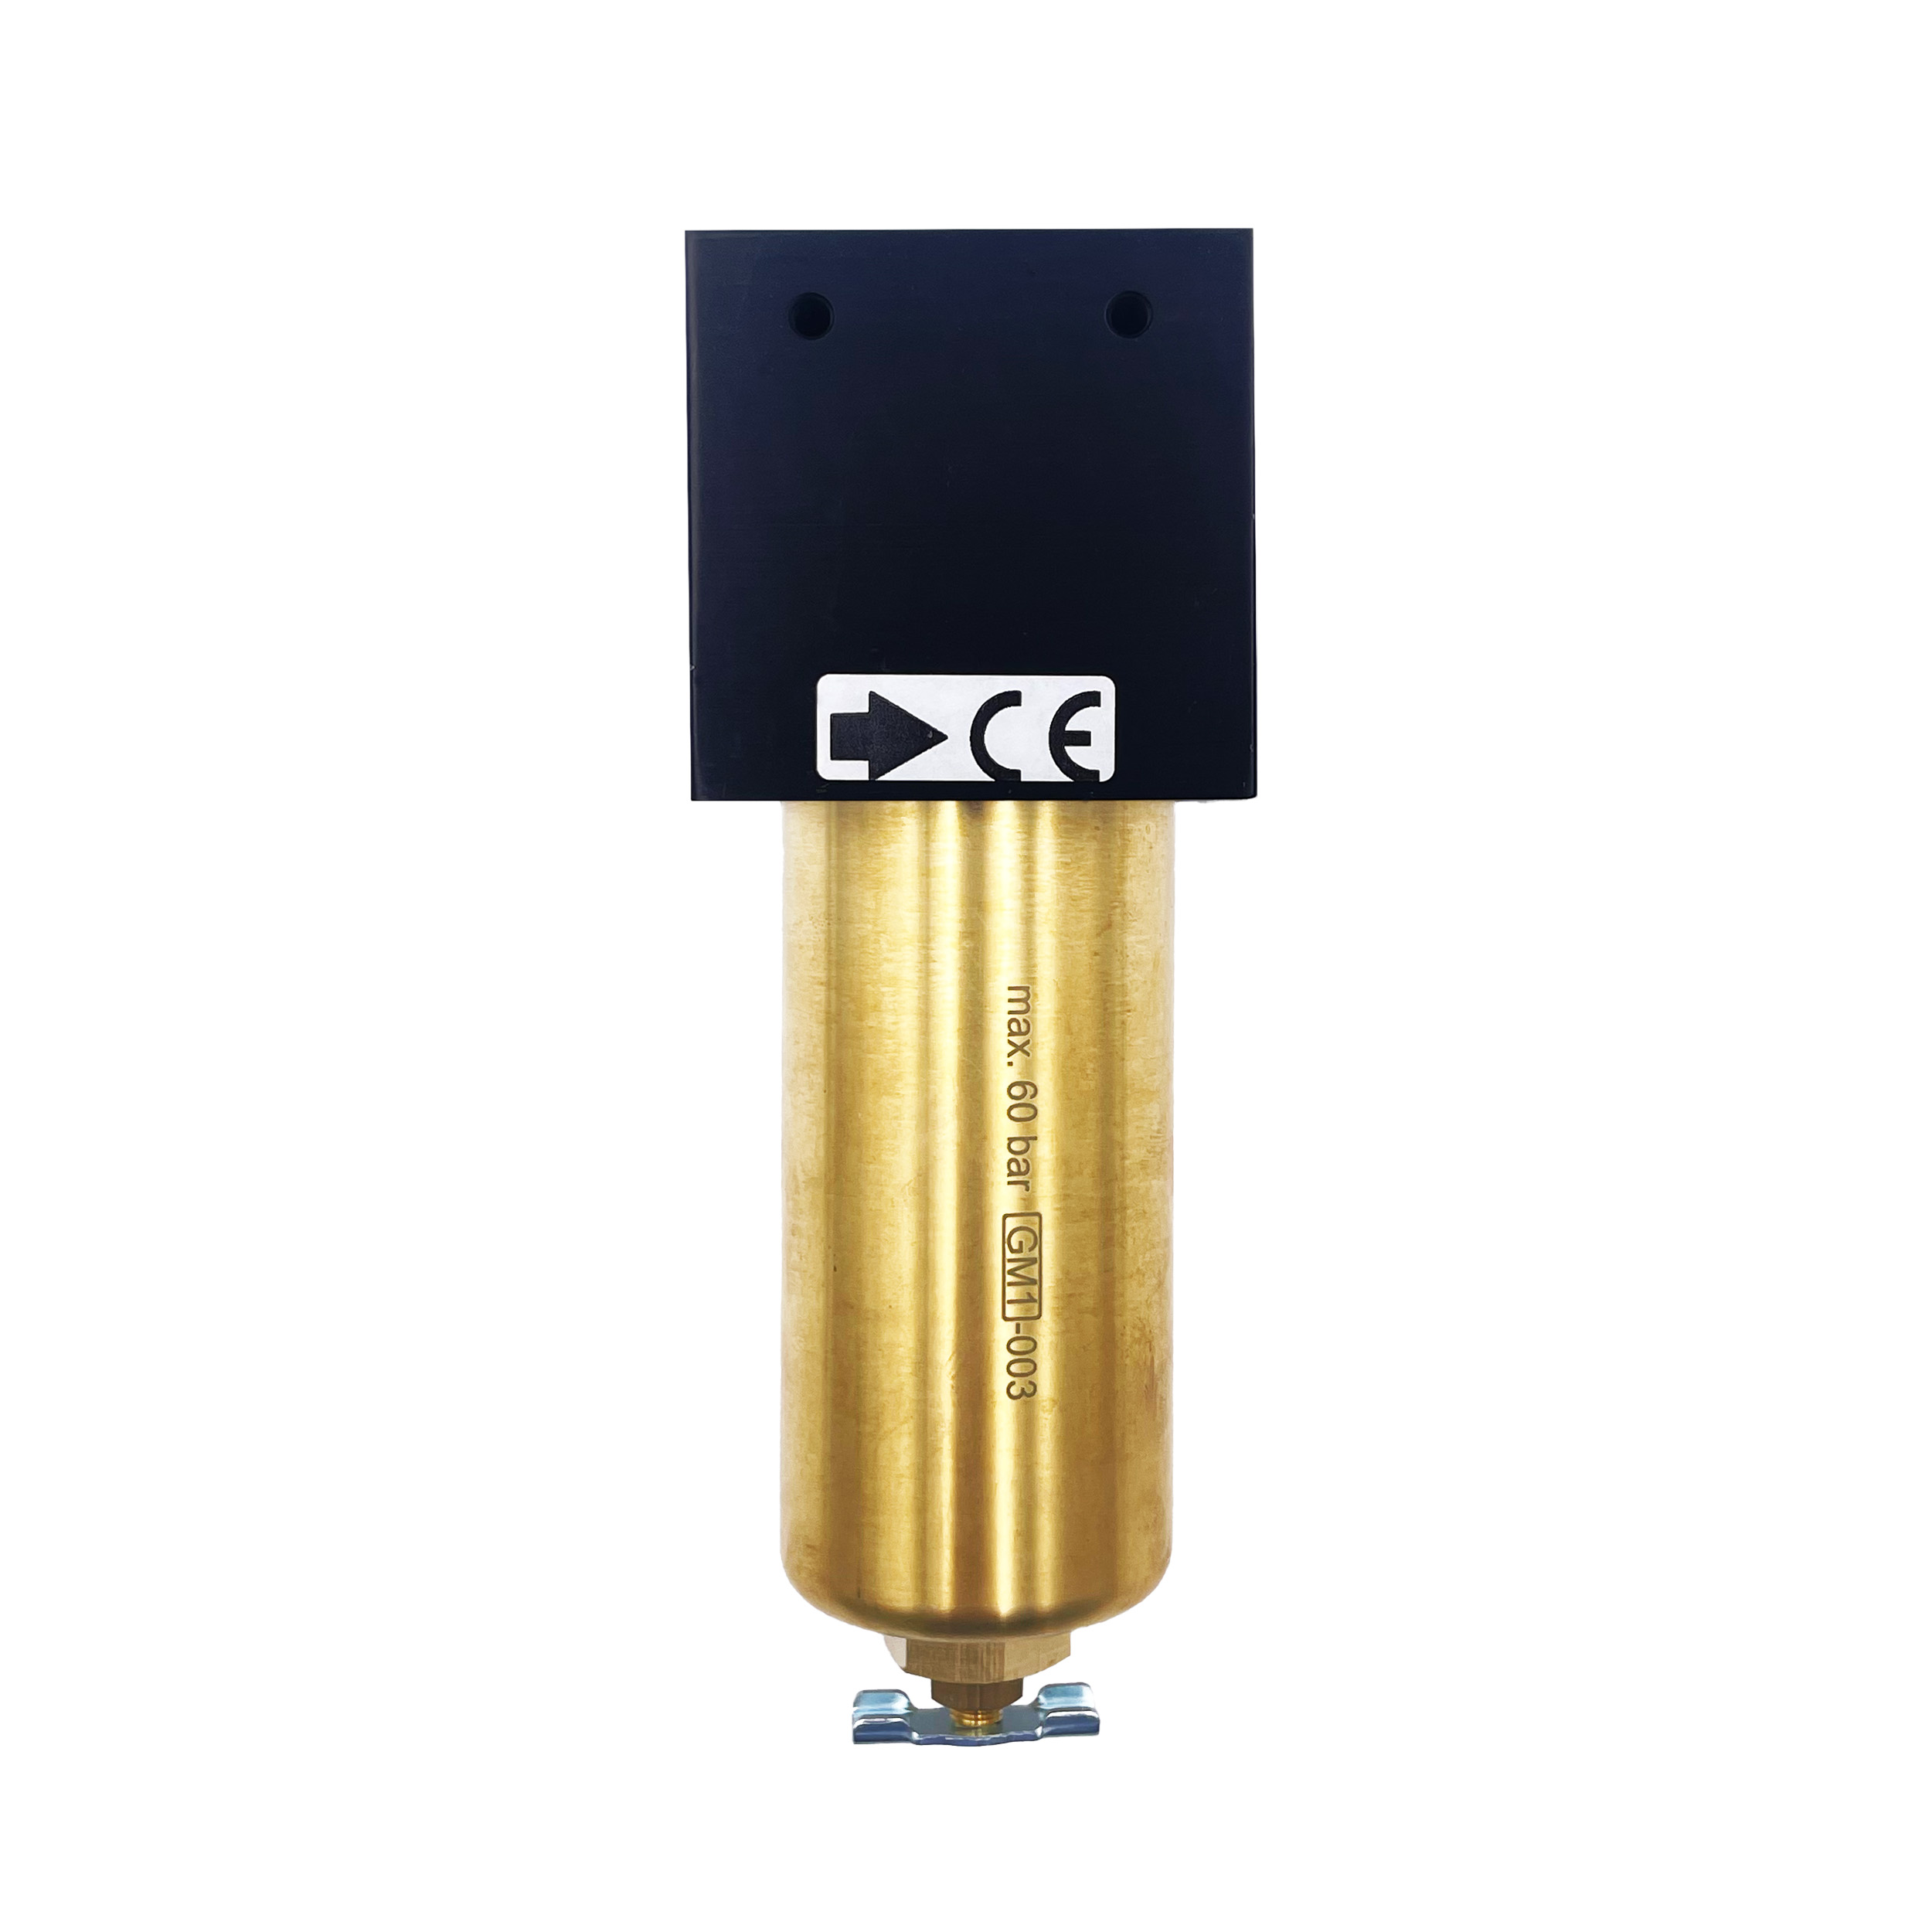 Mikrofilter standard 60 bar, BG 40, G½, Metallbehälter, Handablassventil